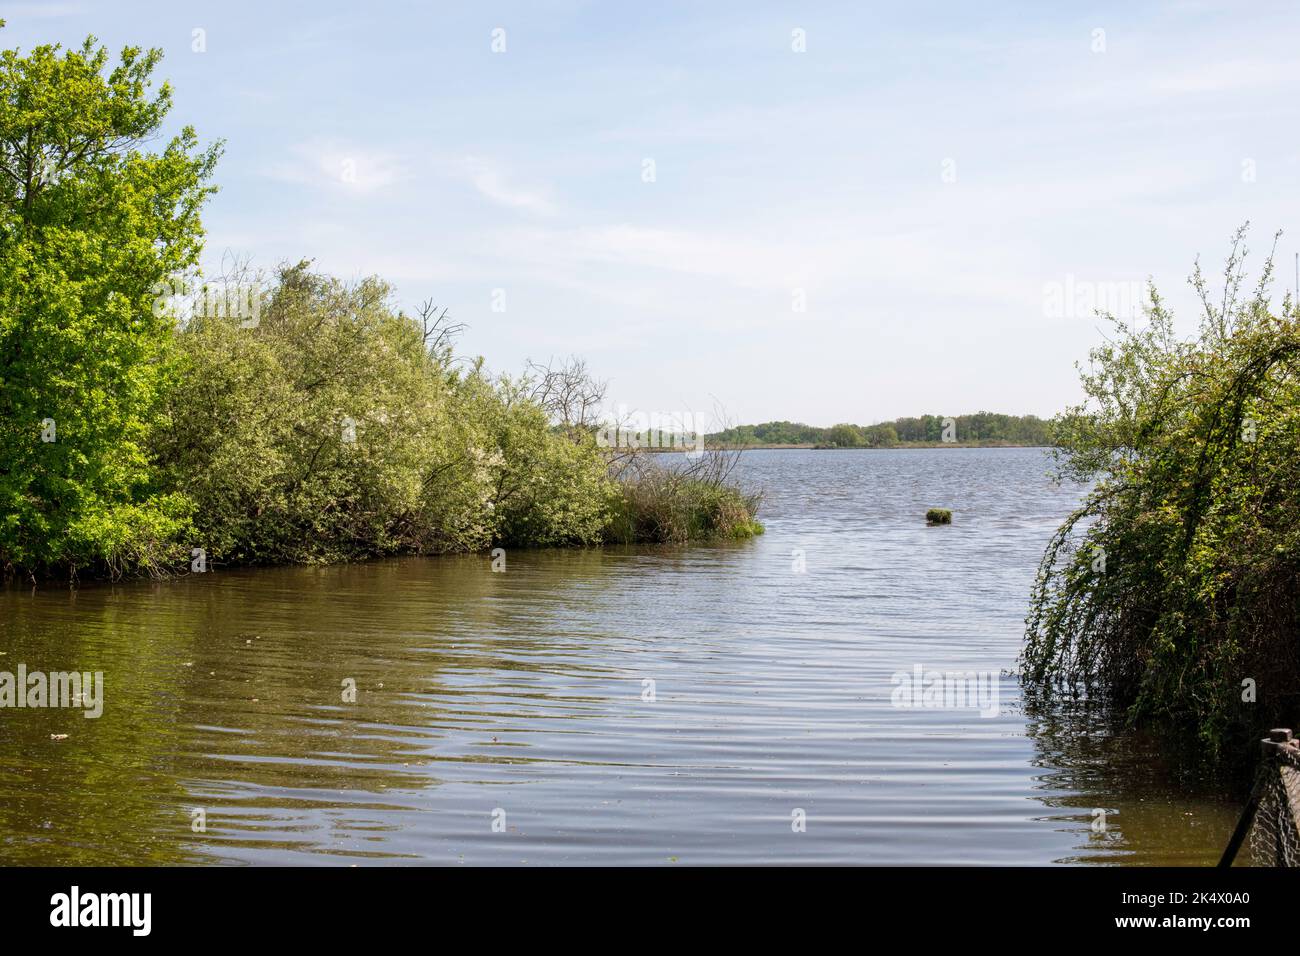 Teich des Parc Régional de la Brenne en France. Dieser Teich ist einer der 3000 anderen Teiche dieses Parc Régional. Viele Vögel finden das ganze Jahr über statt. Stockfoto